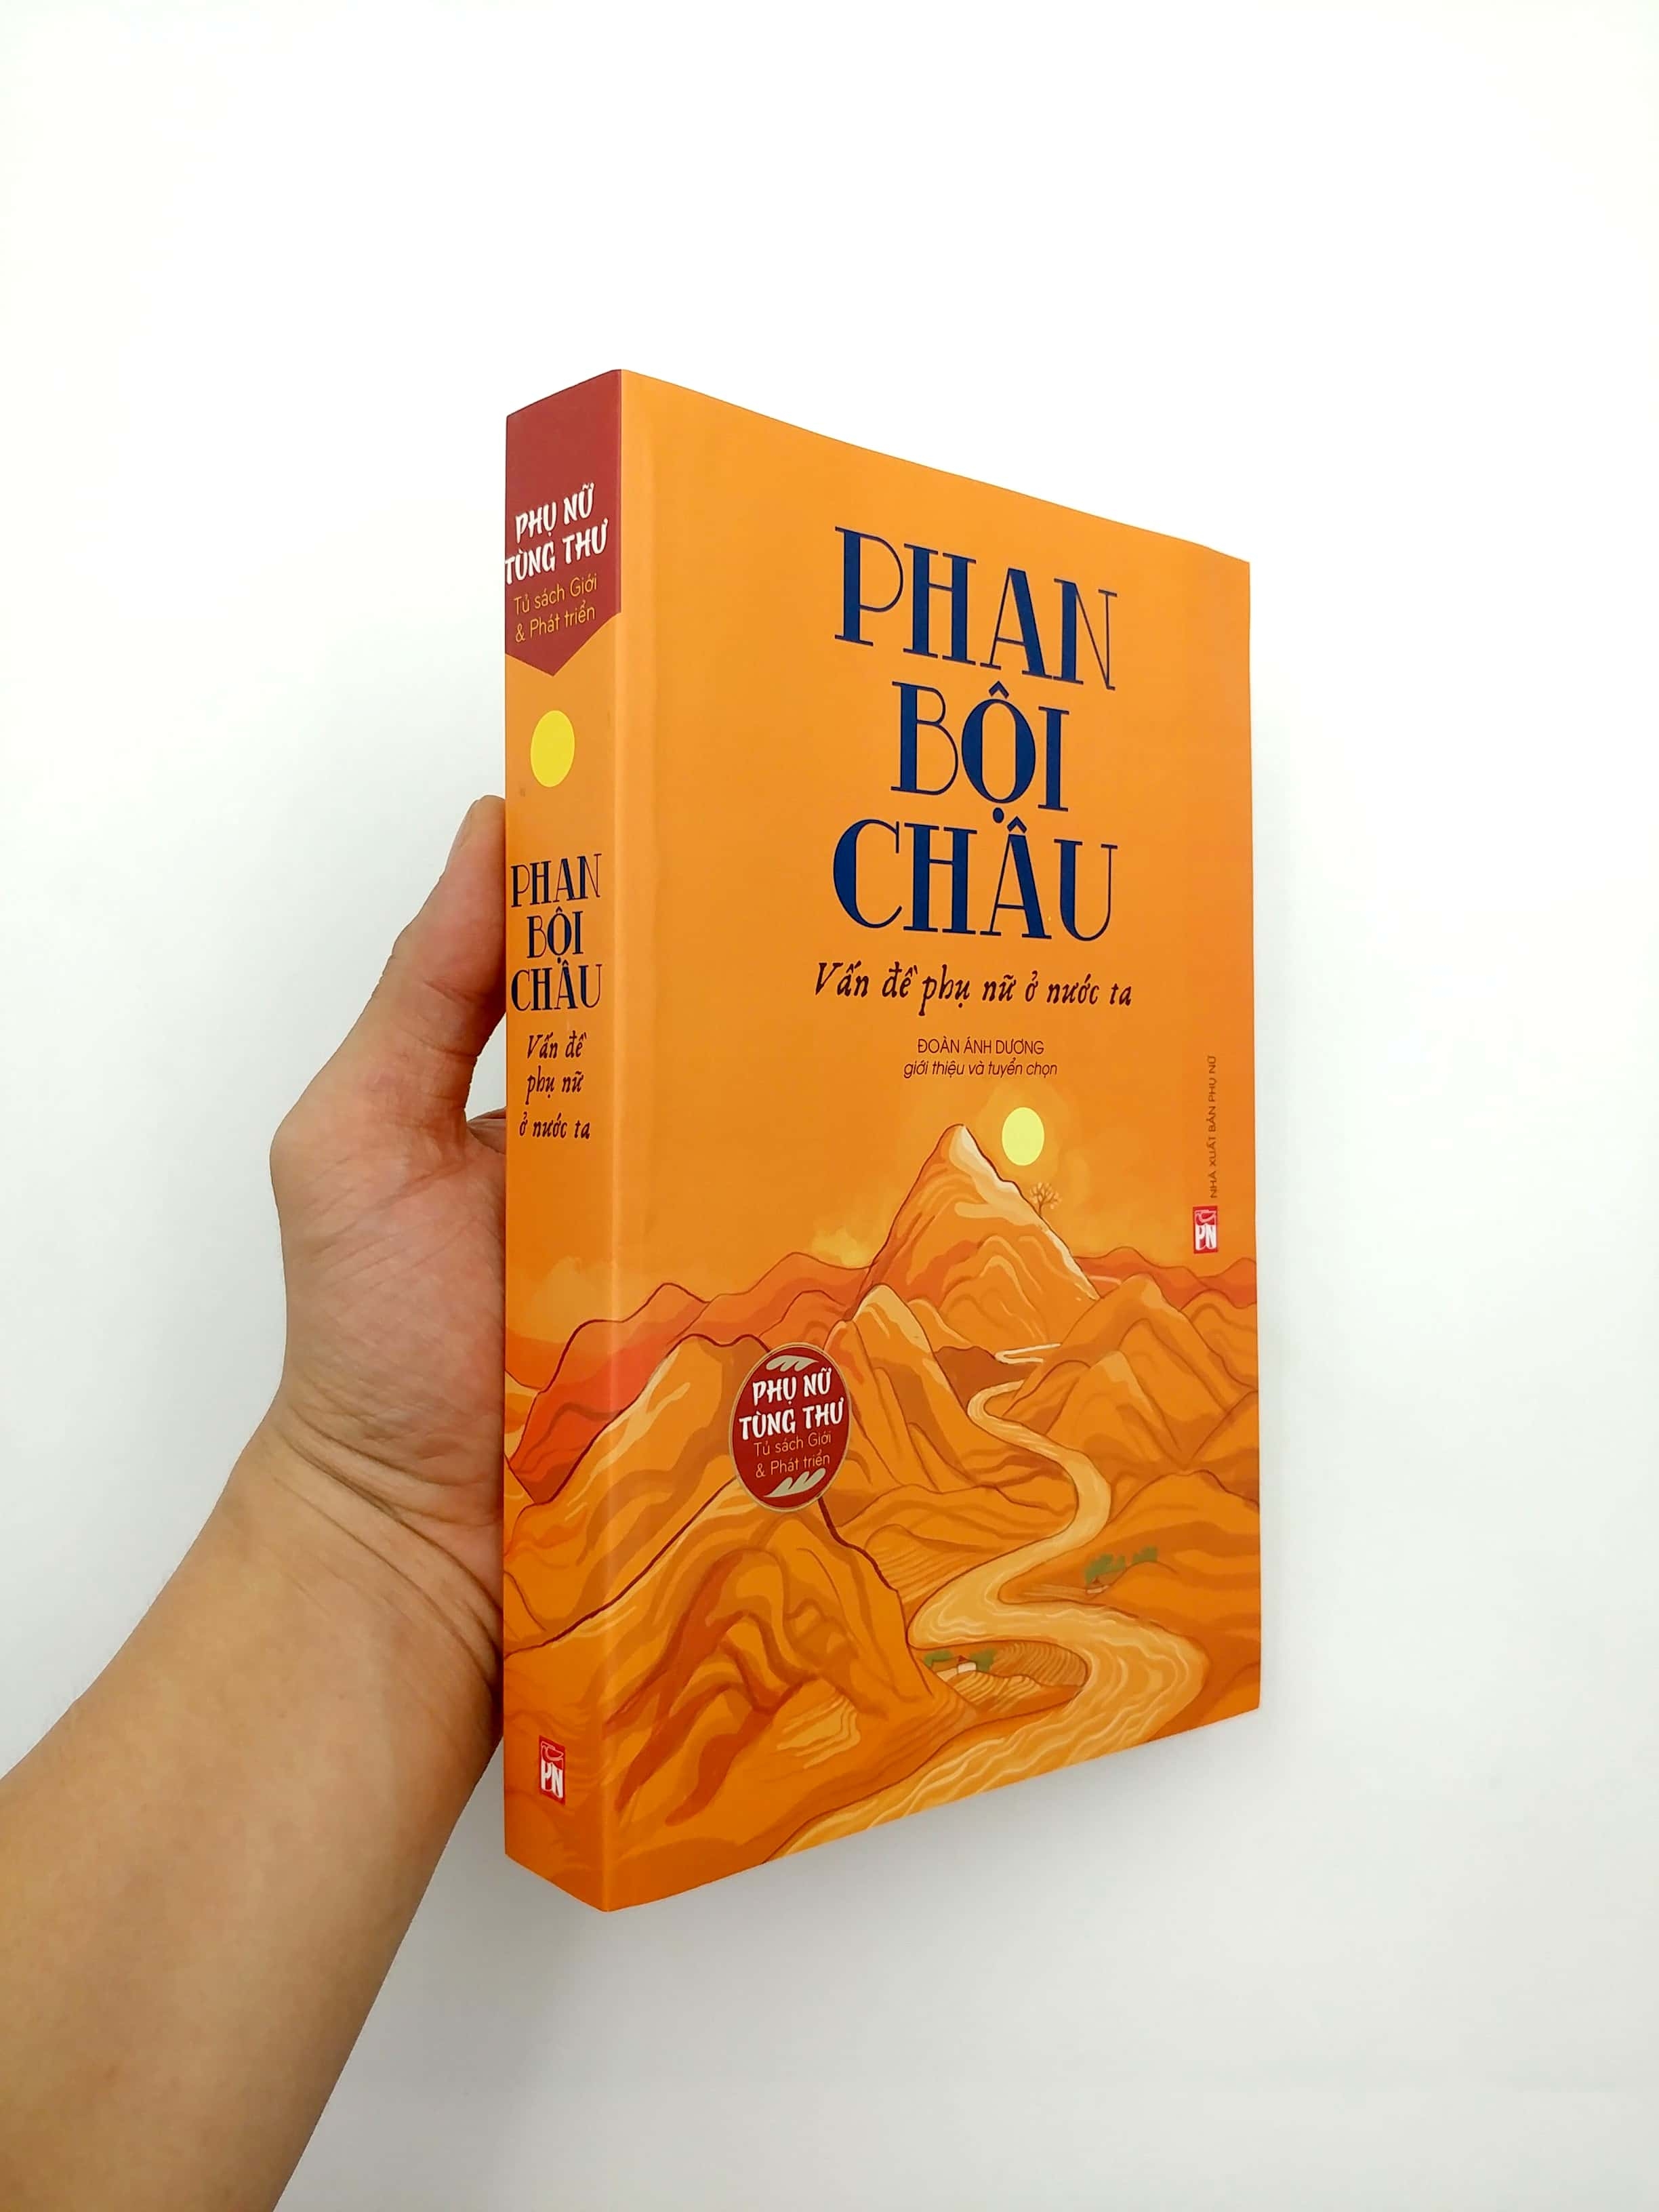 Phan Bội Châu - Vấn Đề Phụ Nữ Ở Nước Ta PDF